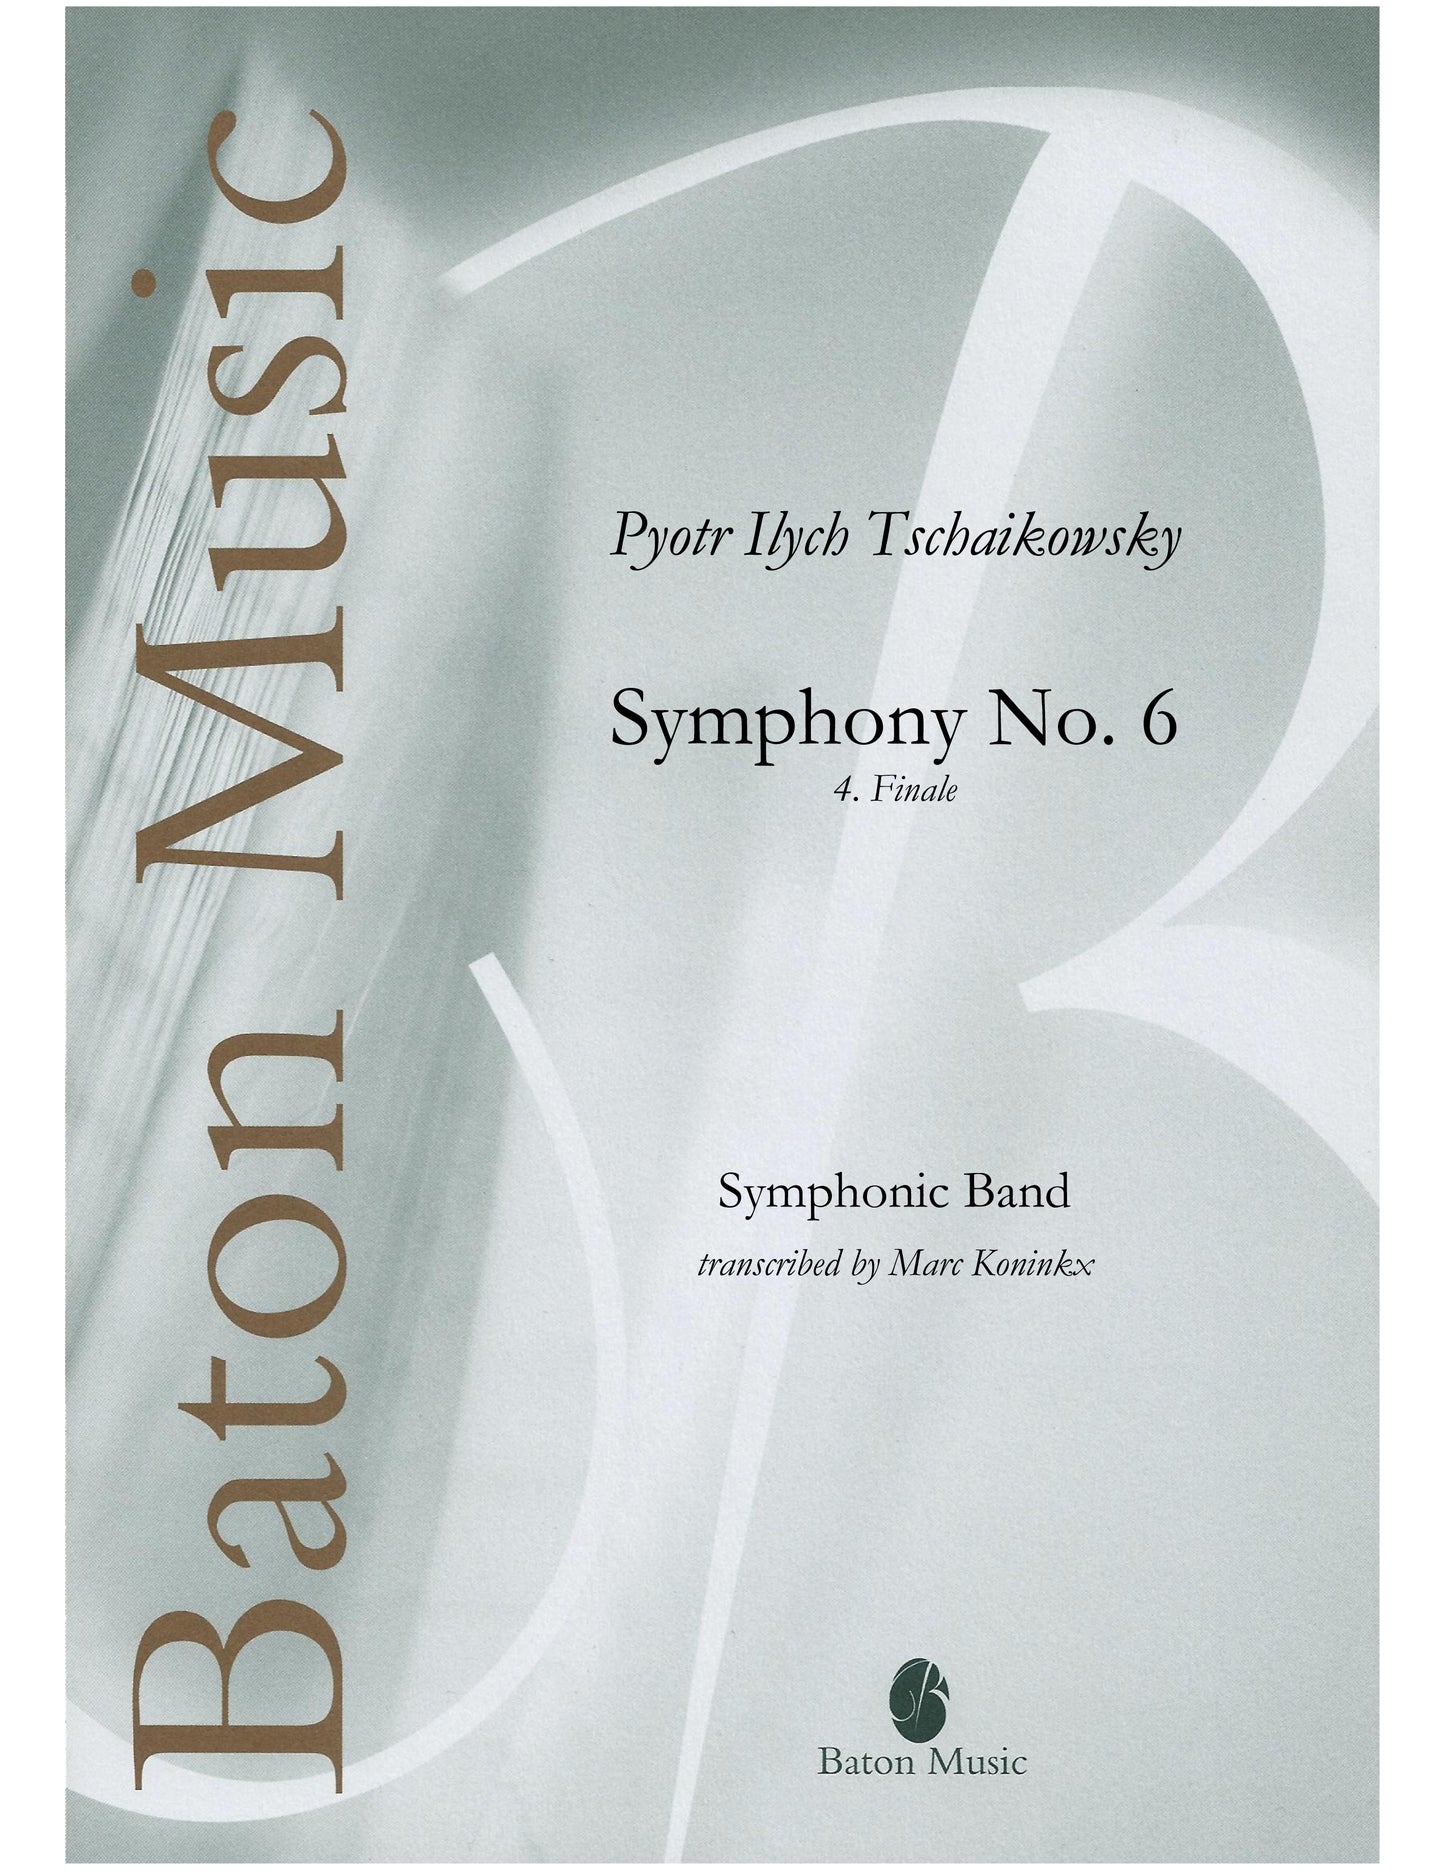 Symphony No. 6 'Pathétique' (Finale) - Tchaikowsky